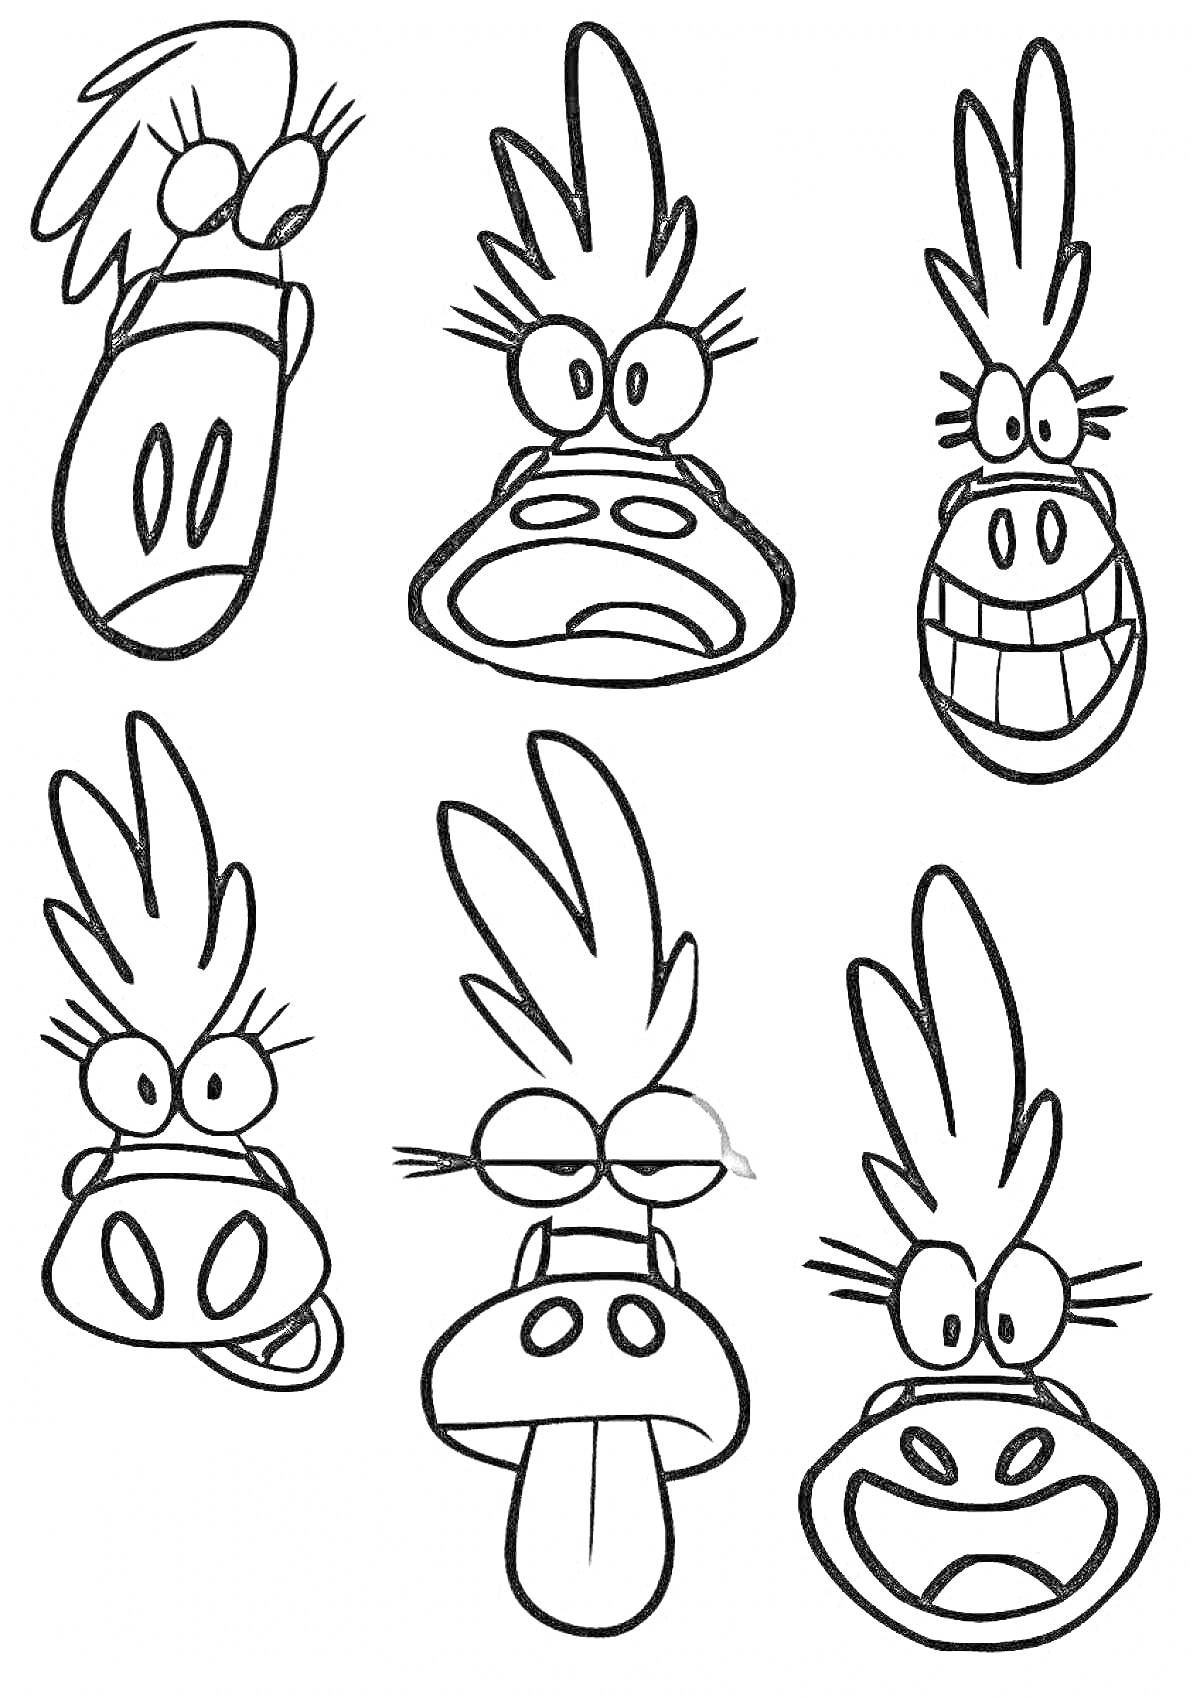 Раскраска Шесть забавных инопланетных персонажей с перьями на головах и разными выражениями лиц